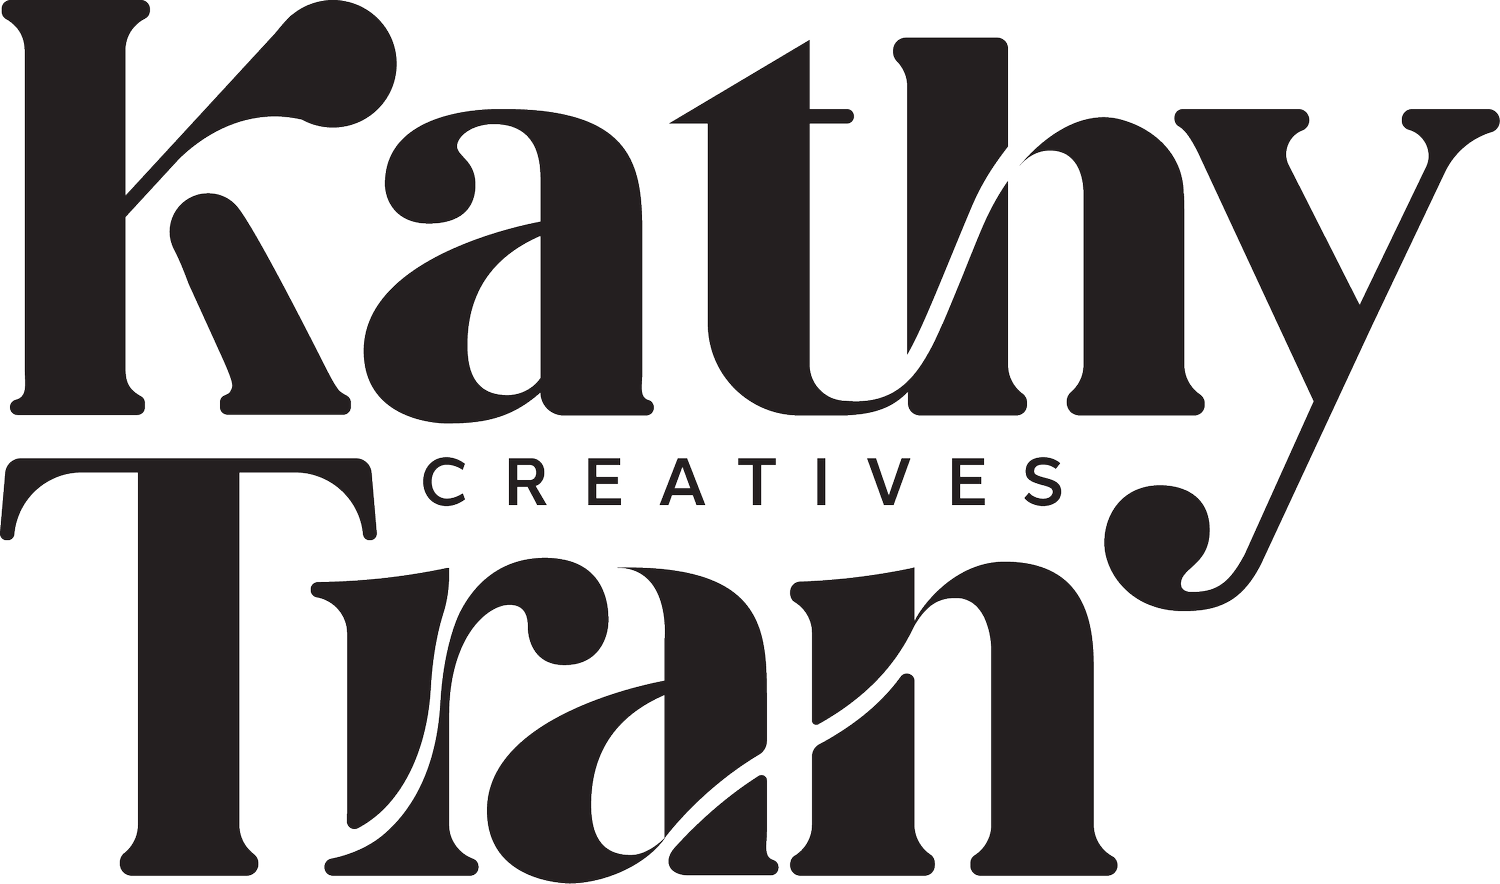 Kathy Tran Creatives